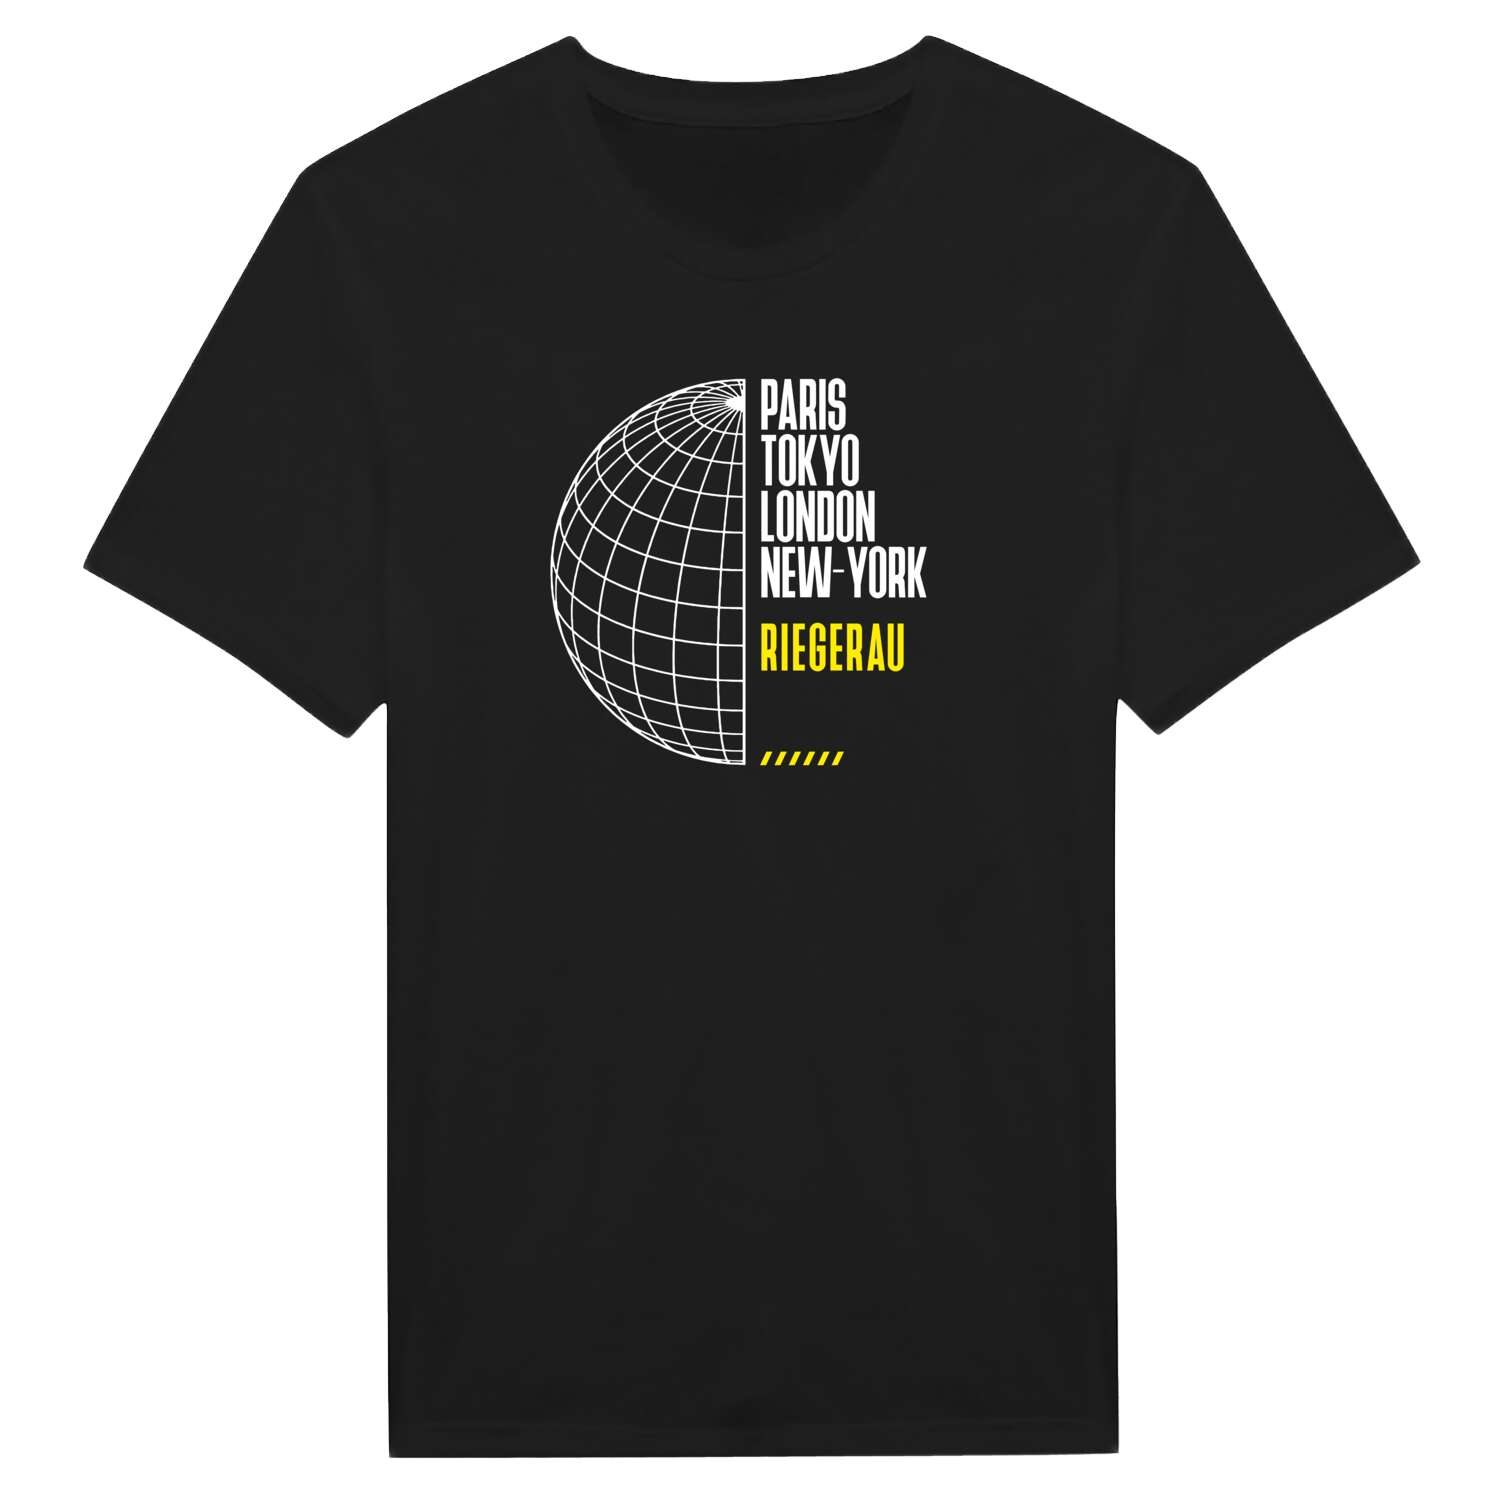 Riegerau T-Shirt »Paris Tokyo London«